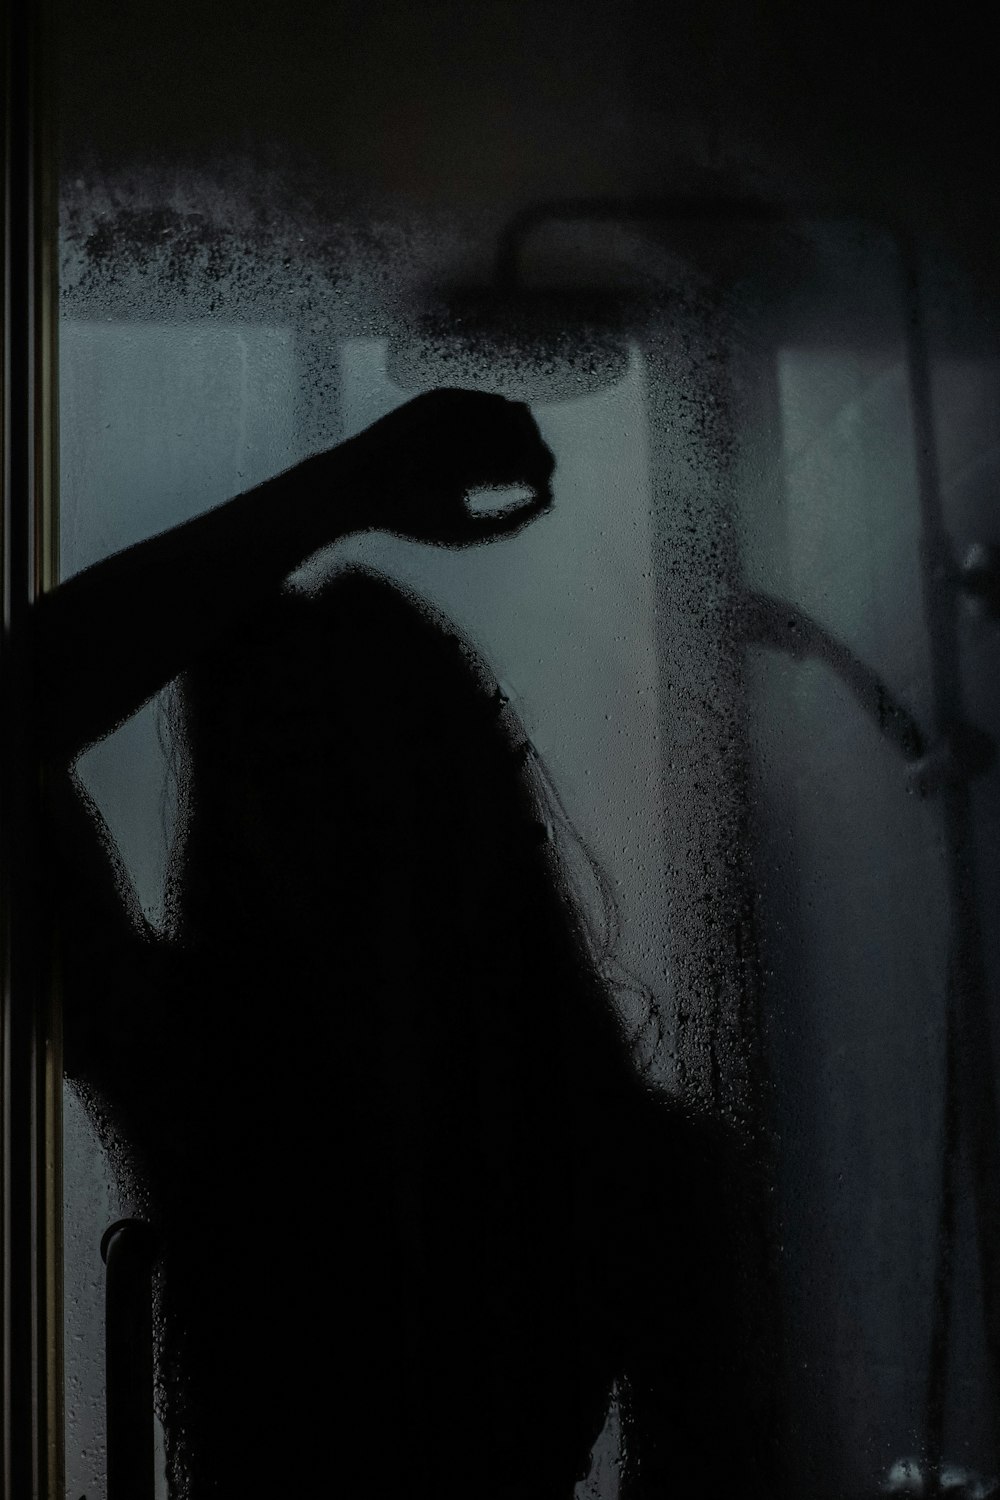 Mujer con camisa negra de manga larga de pie frente a una ventana de vidrio